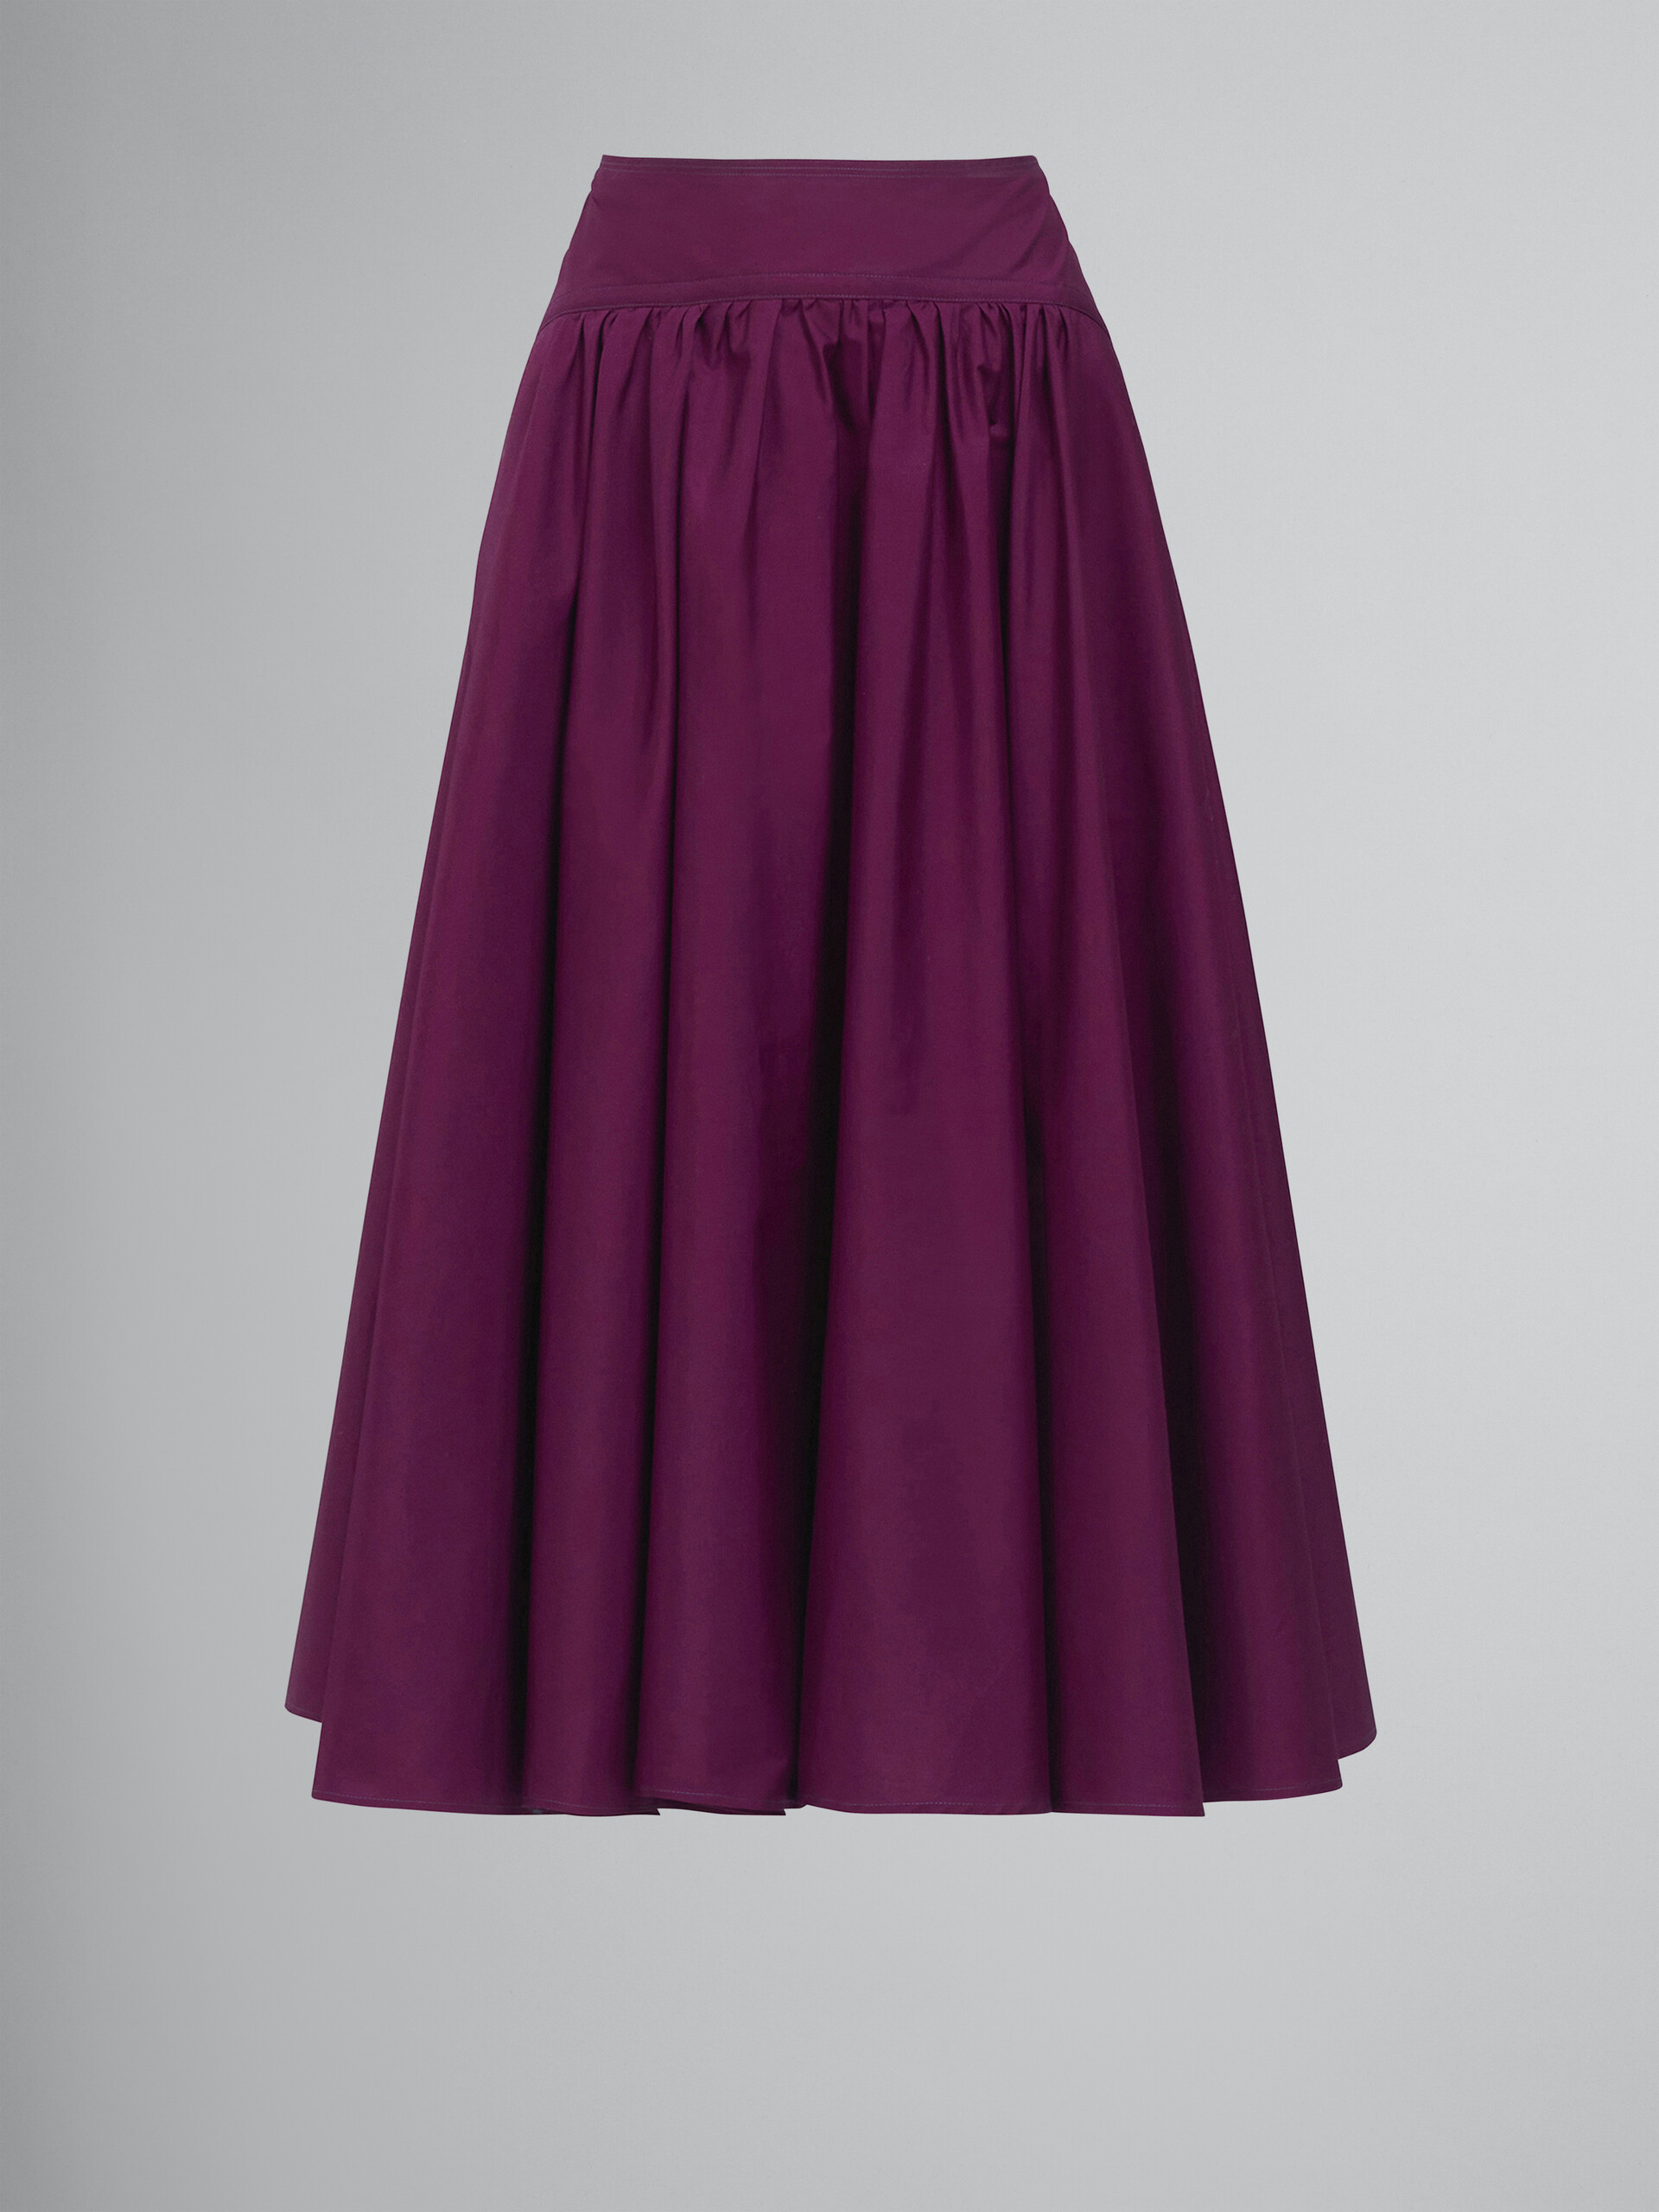 Poplin full skirt - Skirts - Image 1